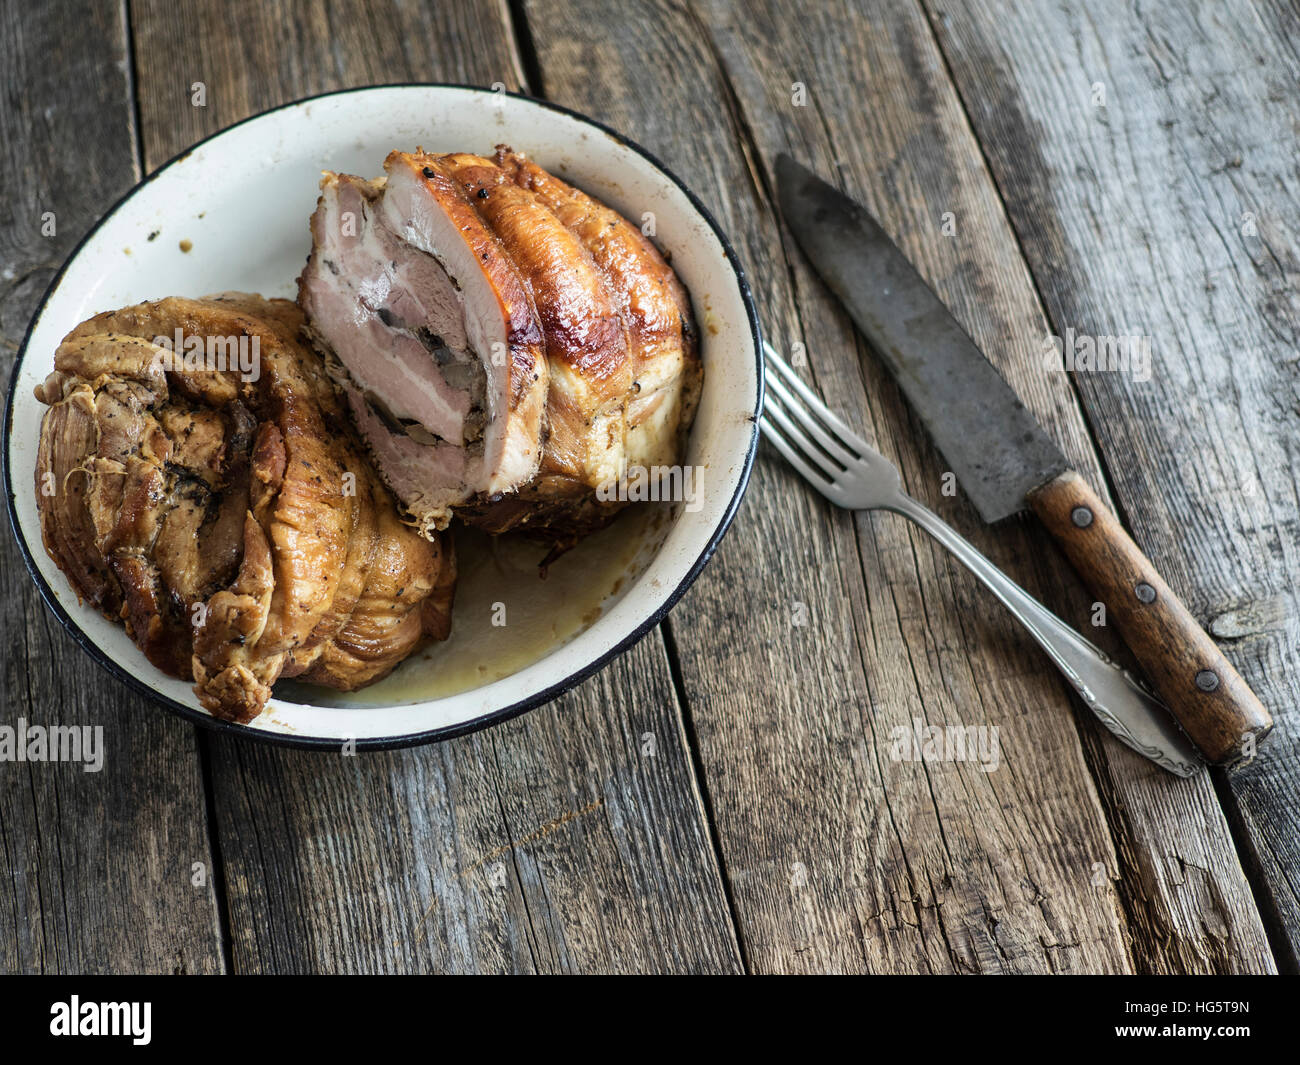 Le pain de viande dans un bol en métal émaillé sur une vieille table en bois vieilli. Selective focus Banque D'Images